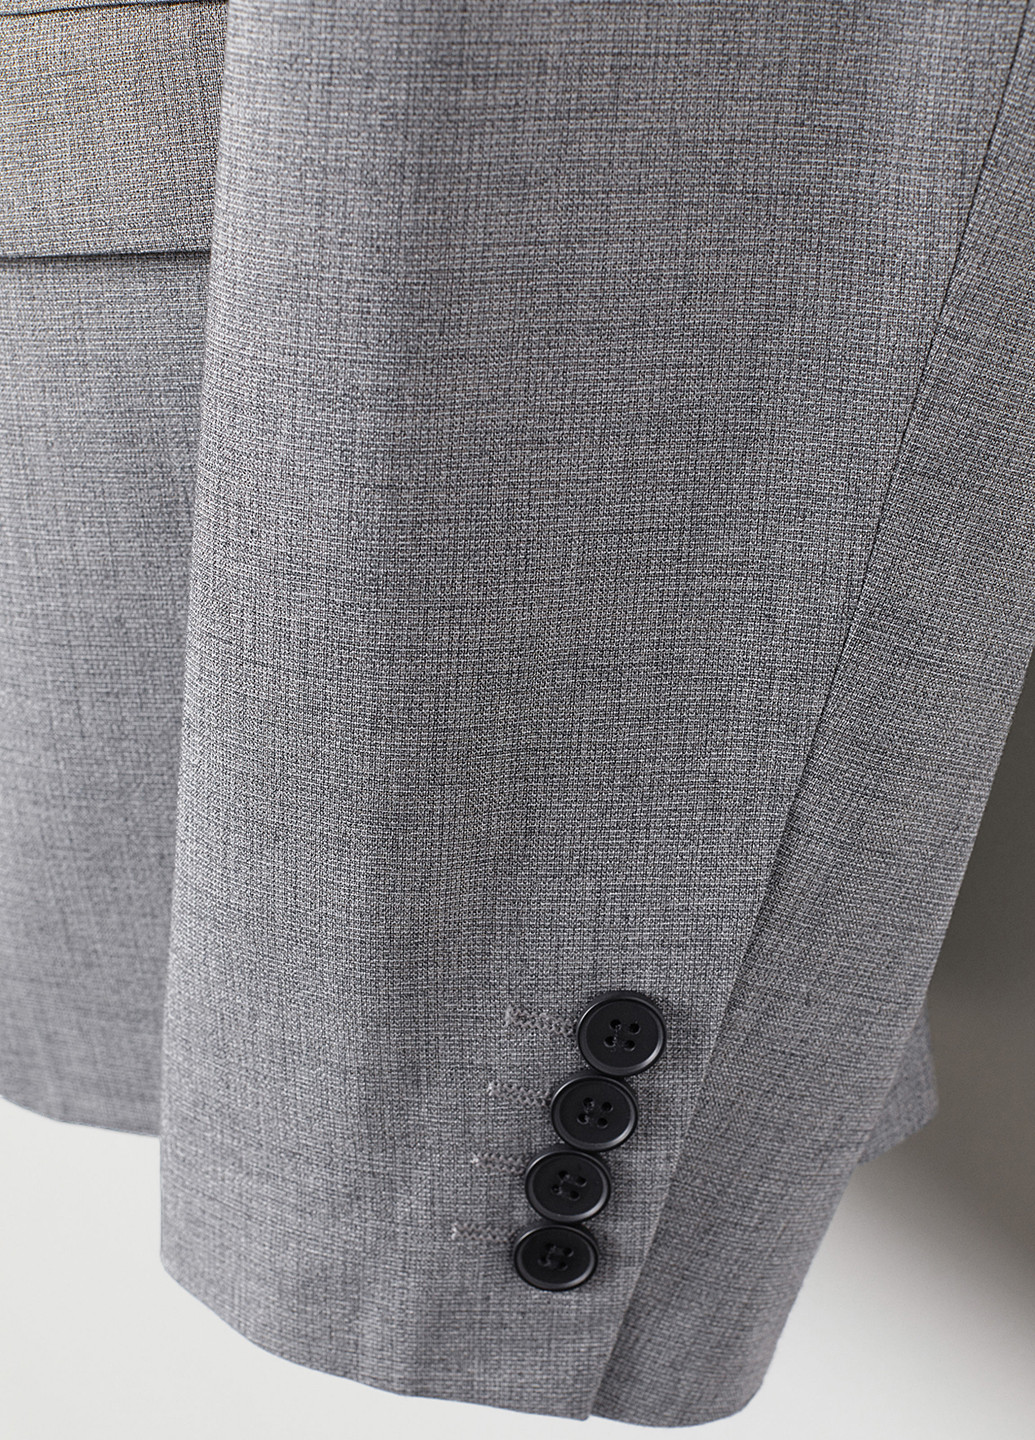 Пиджак H&M с длинным рукавом меланж серый деловой